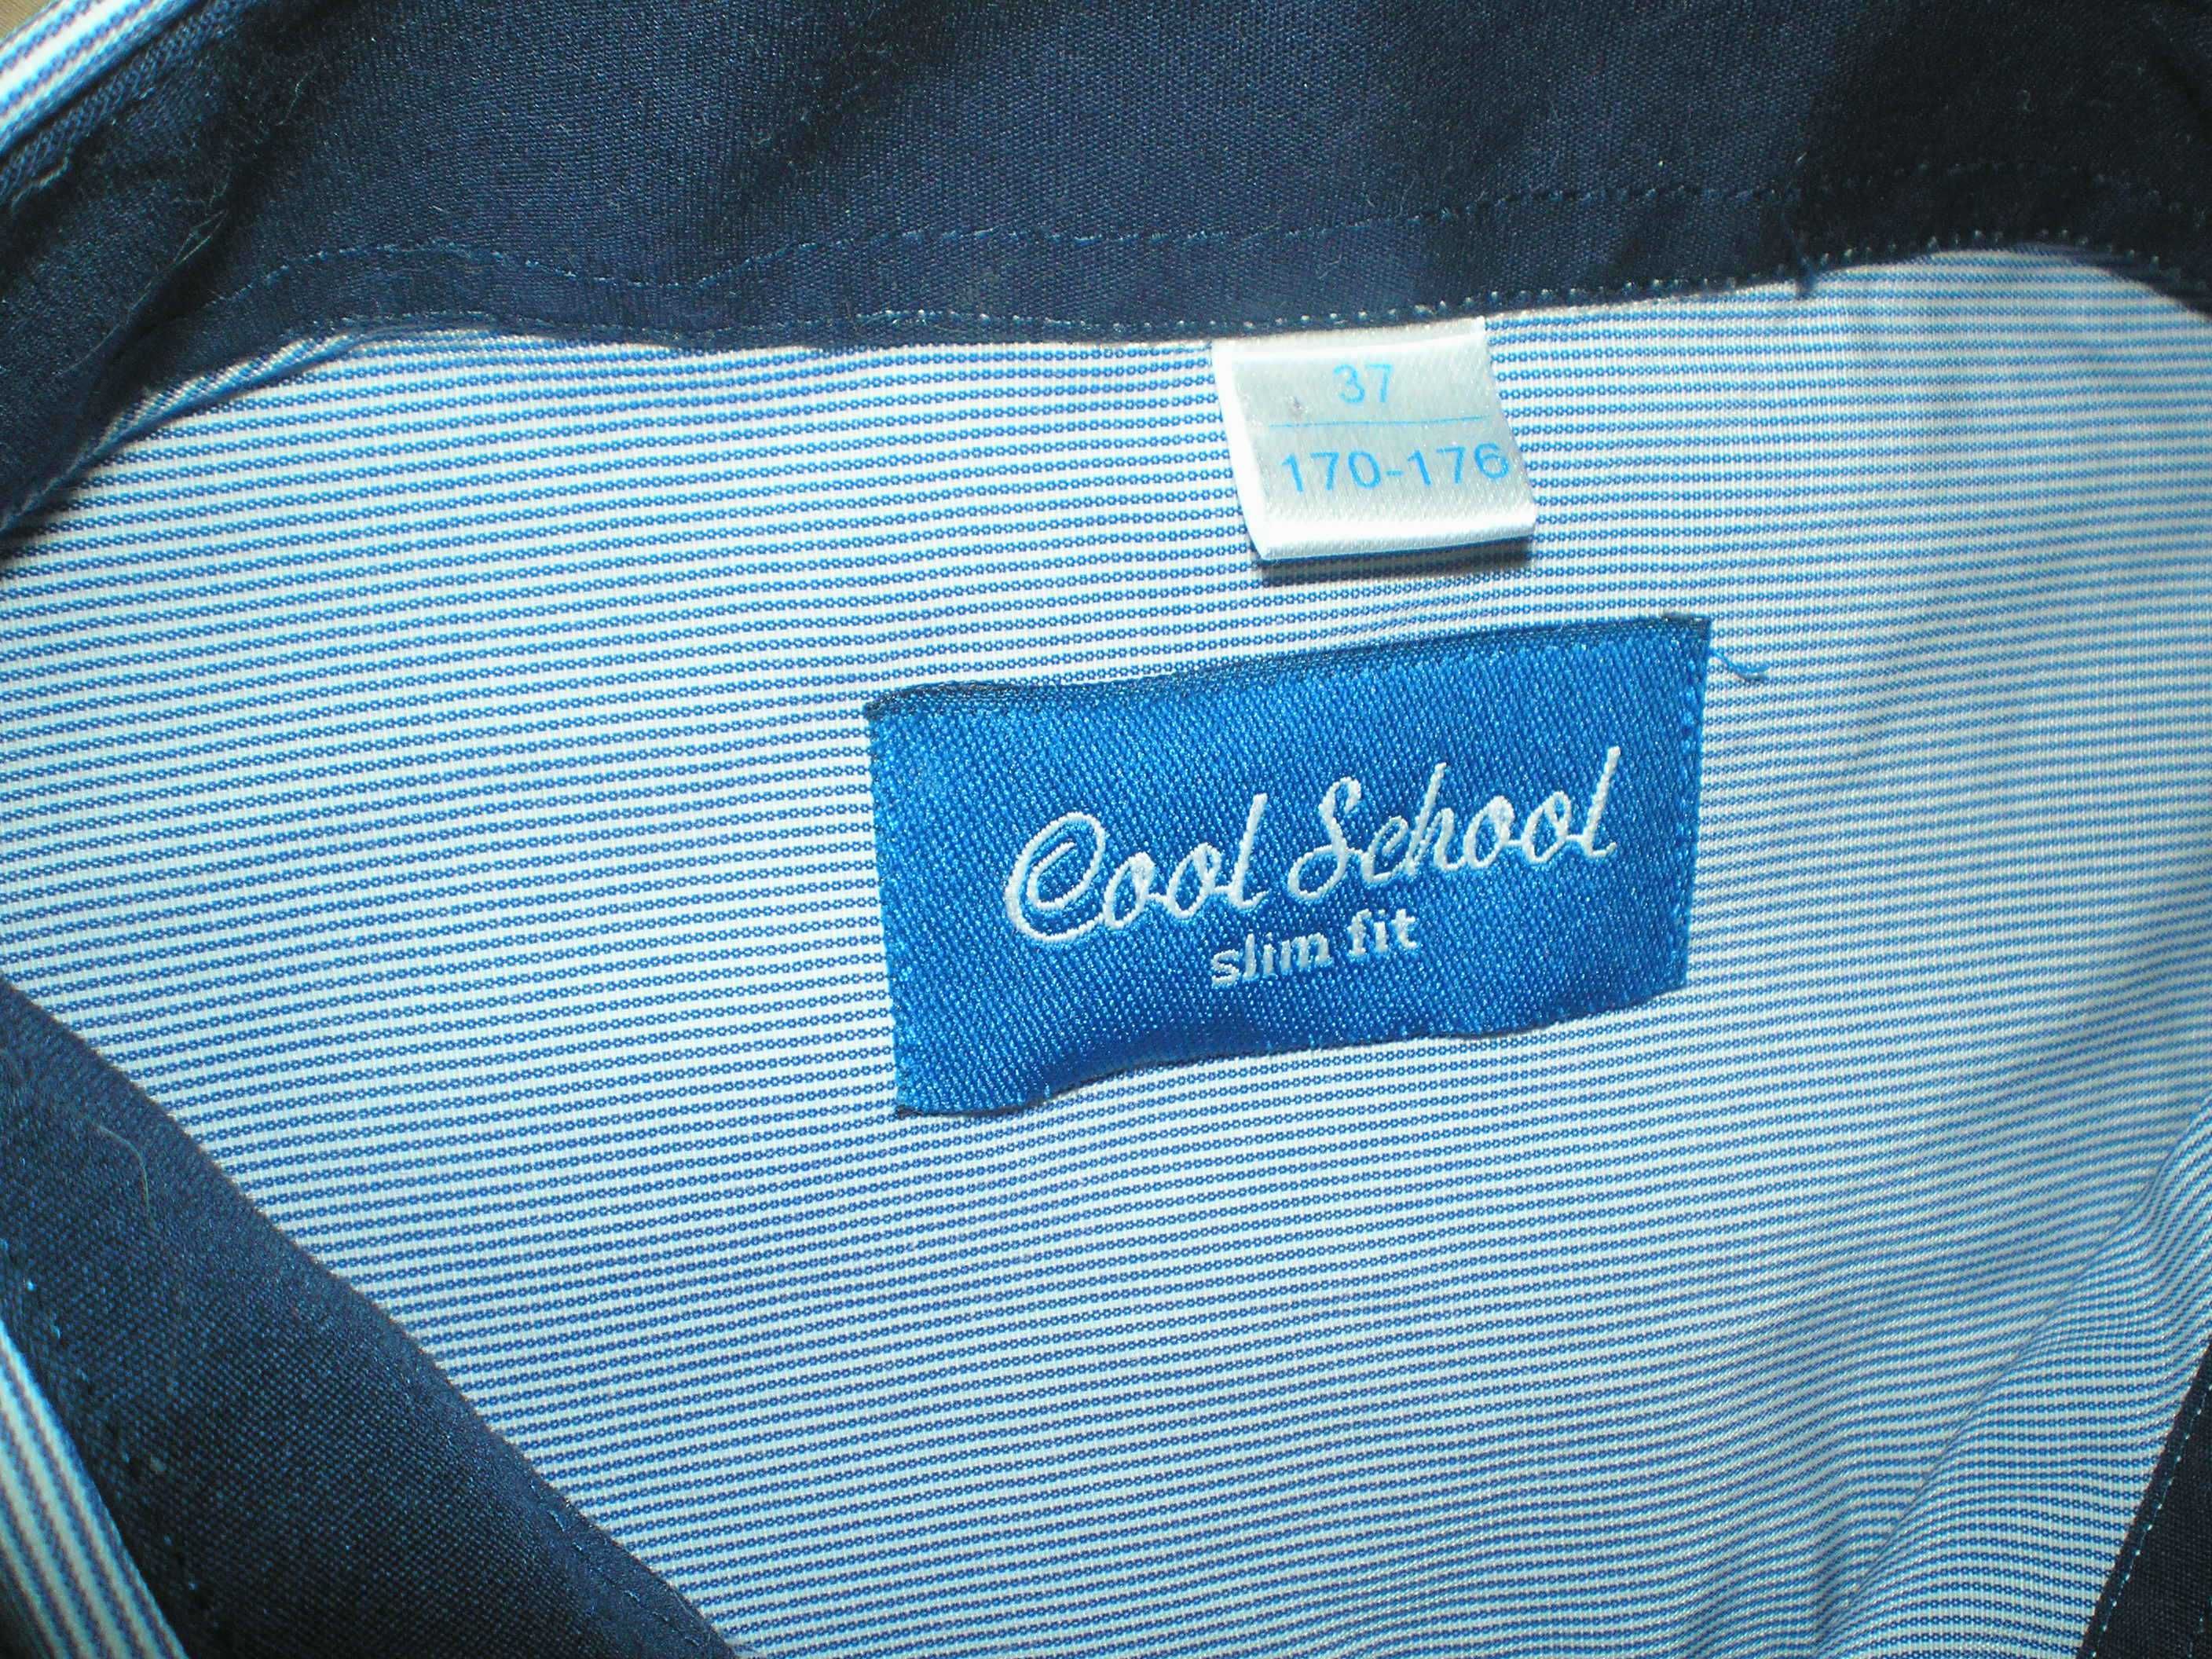 Рубашка COOL SCHOOL, рост 170 - 176 см.